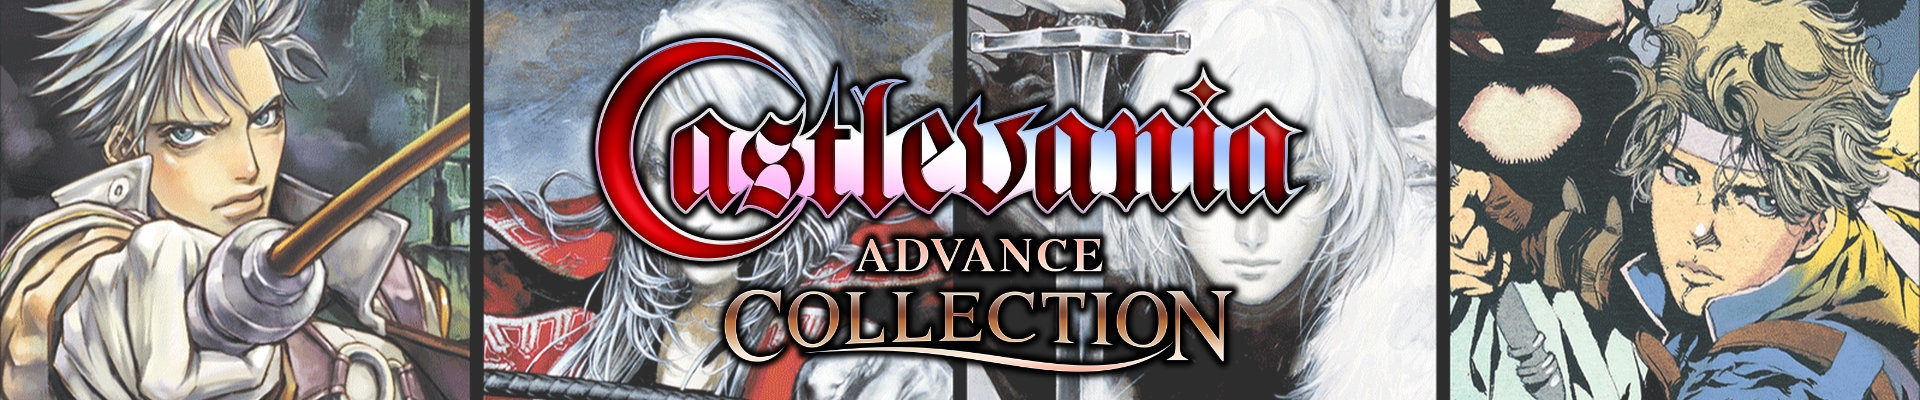 O tempora: Castlevania Advance Collection